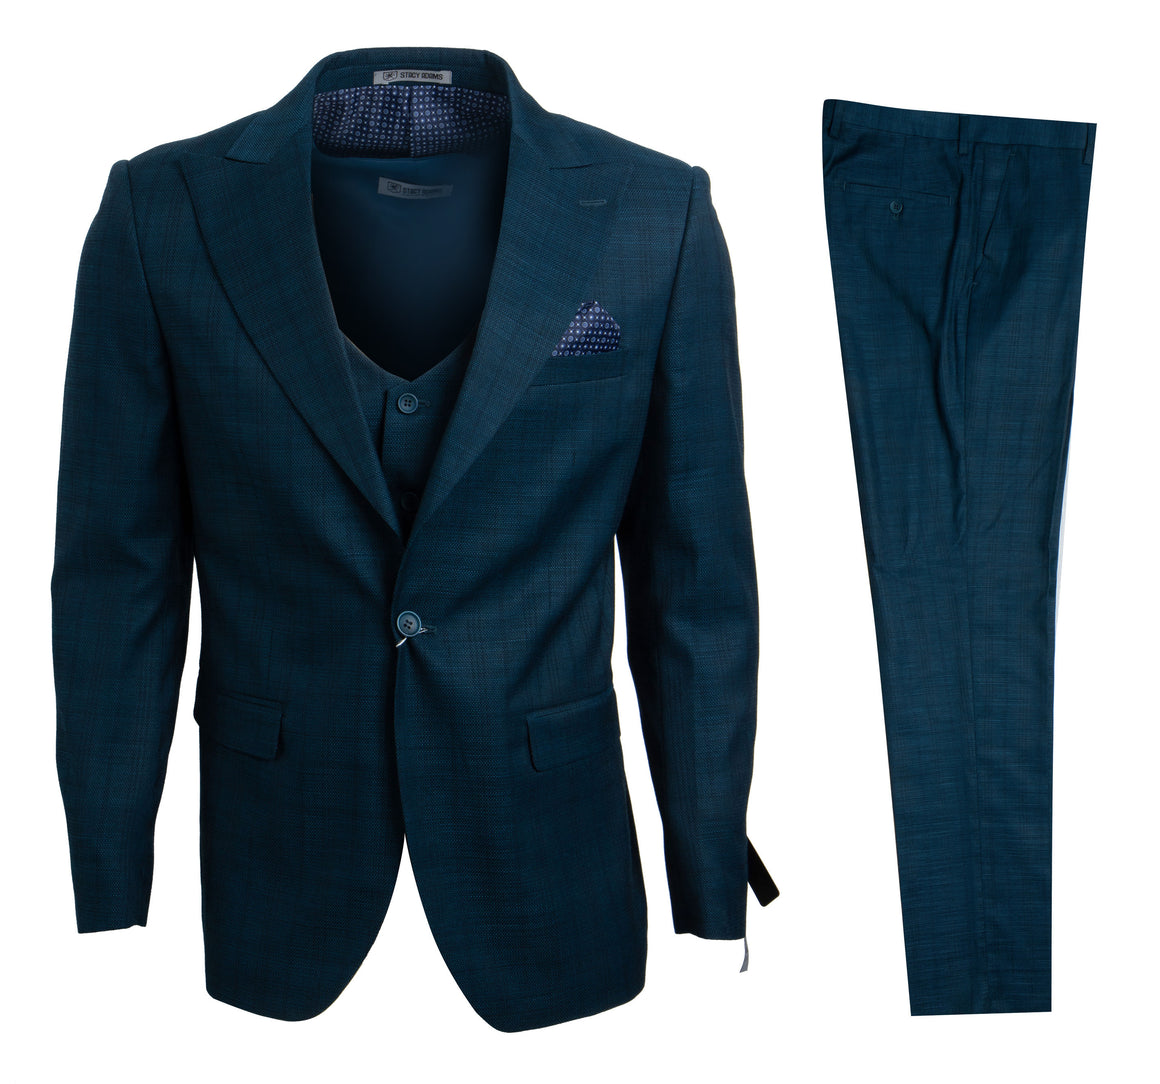 Blue / Green Stacy Adams Men's Suit